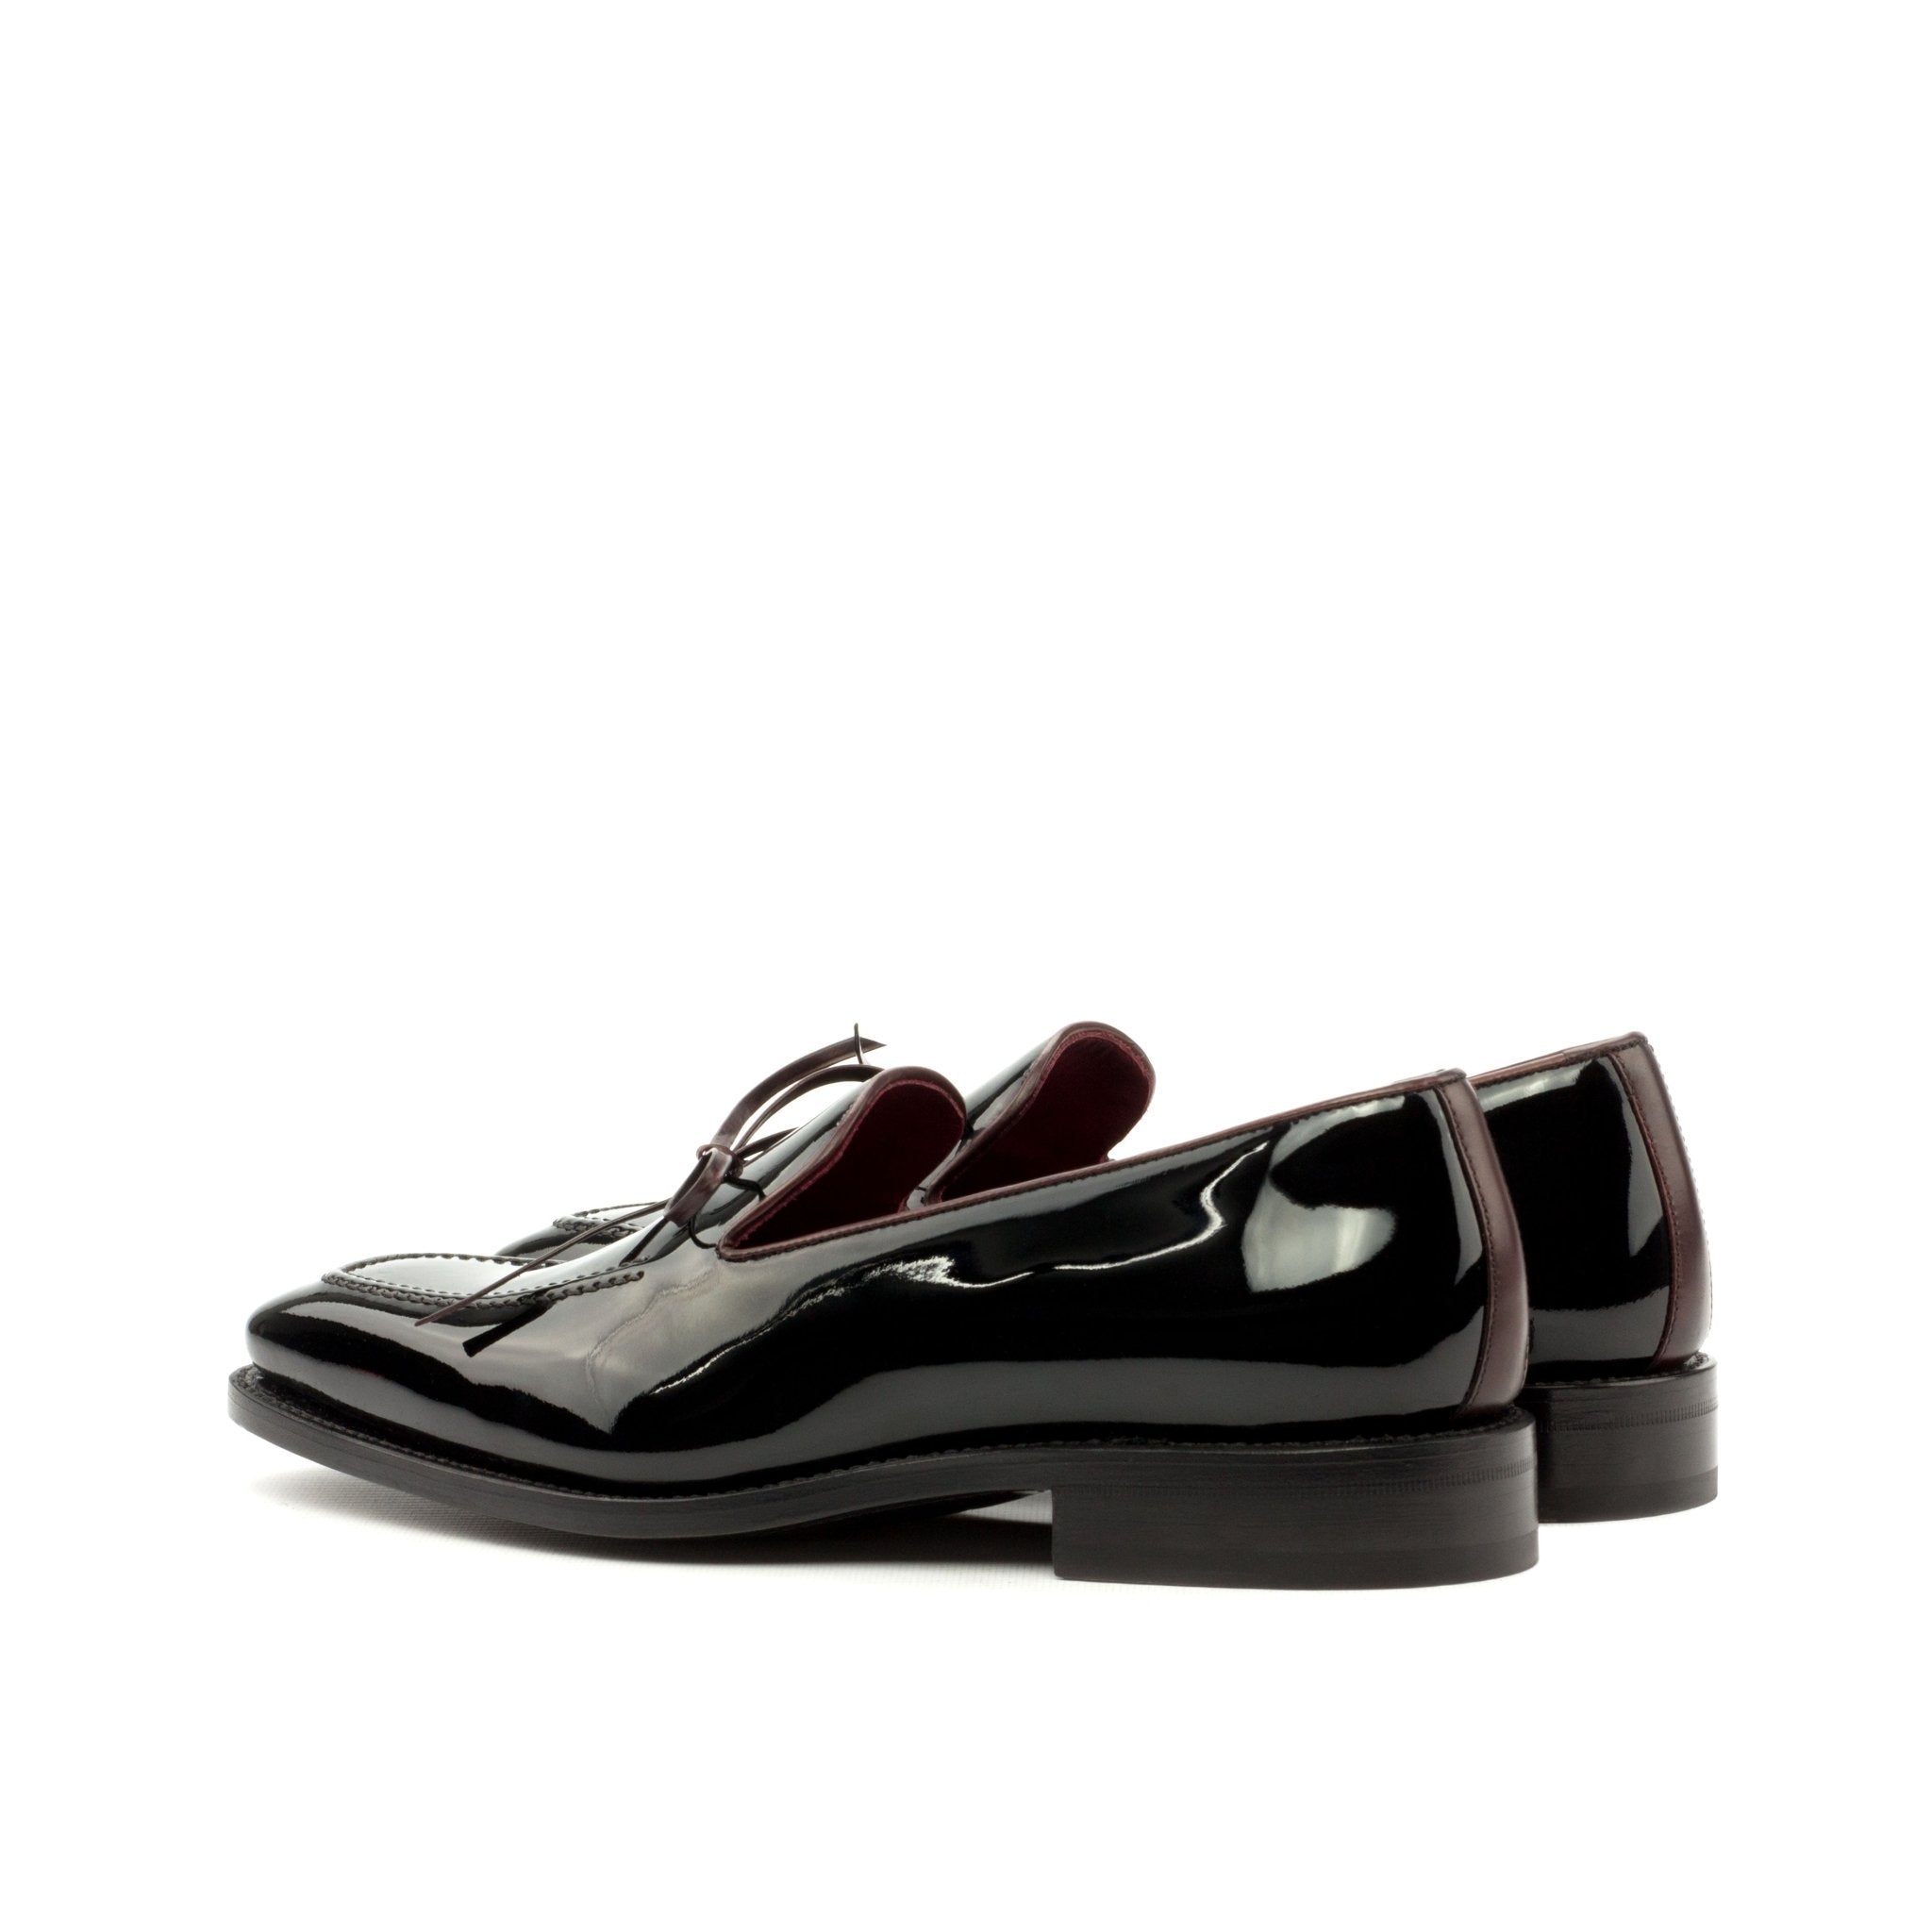 Men's Black Patent Leather Loafers with Burgundy Accents - Maison de Kingsley Couture Harmonie et Fureur Spain